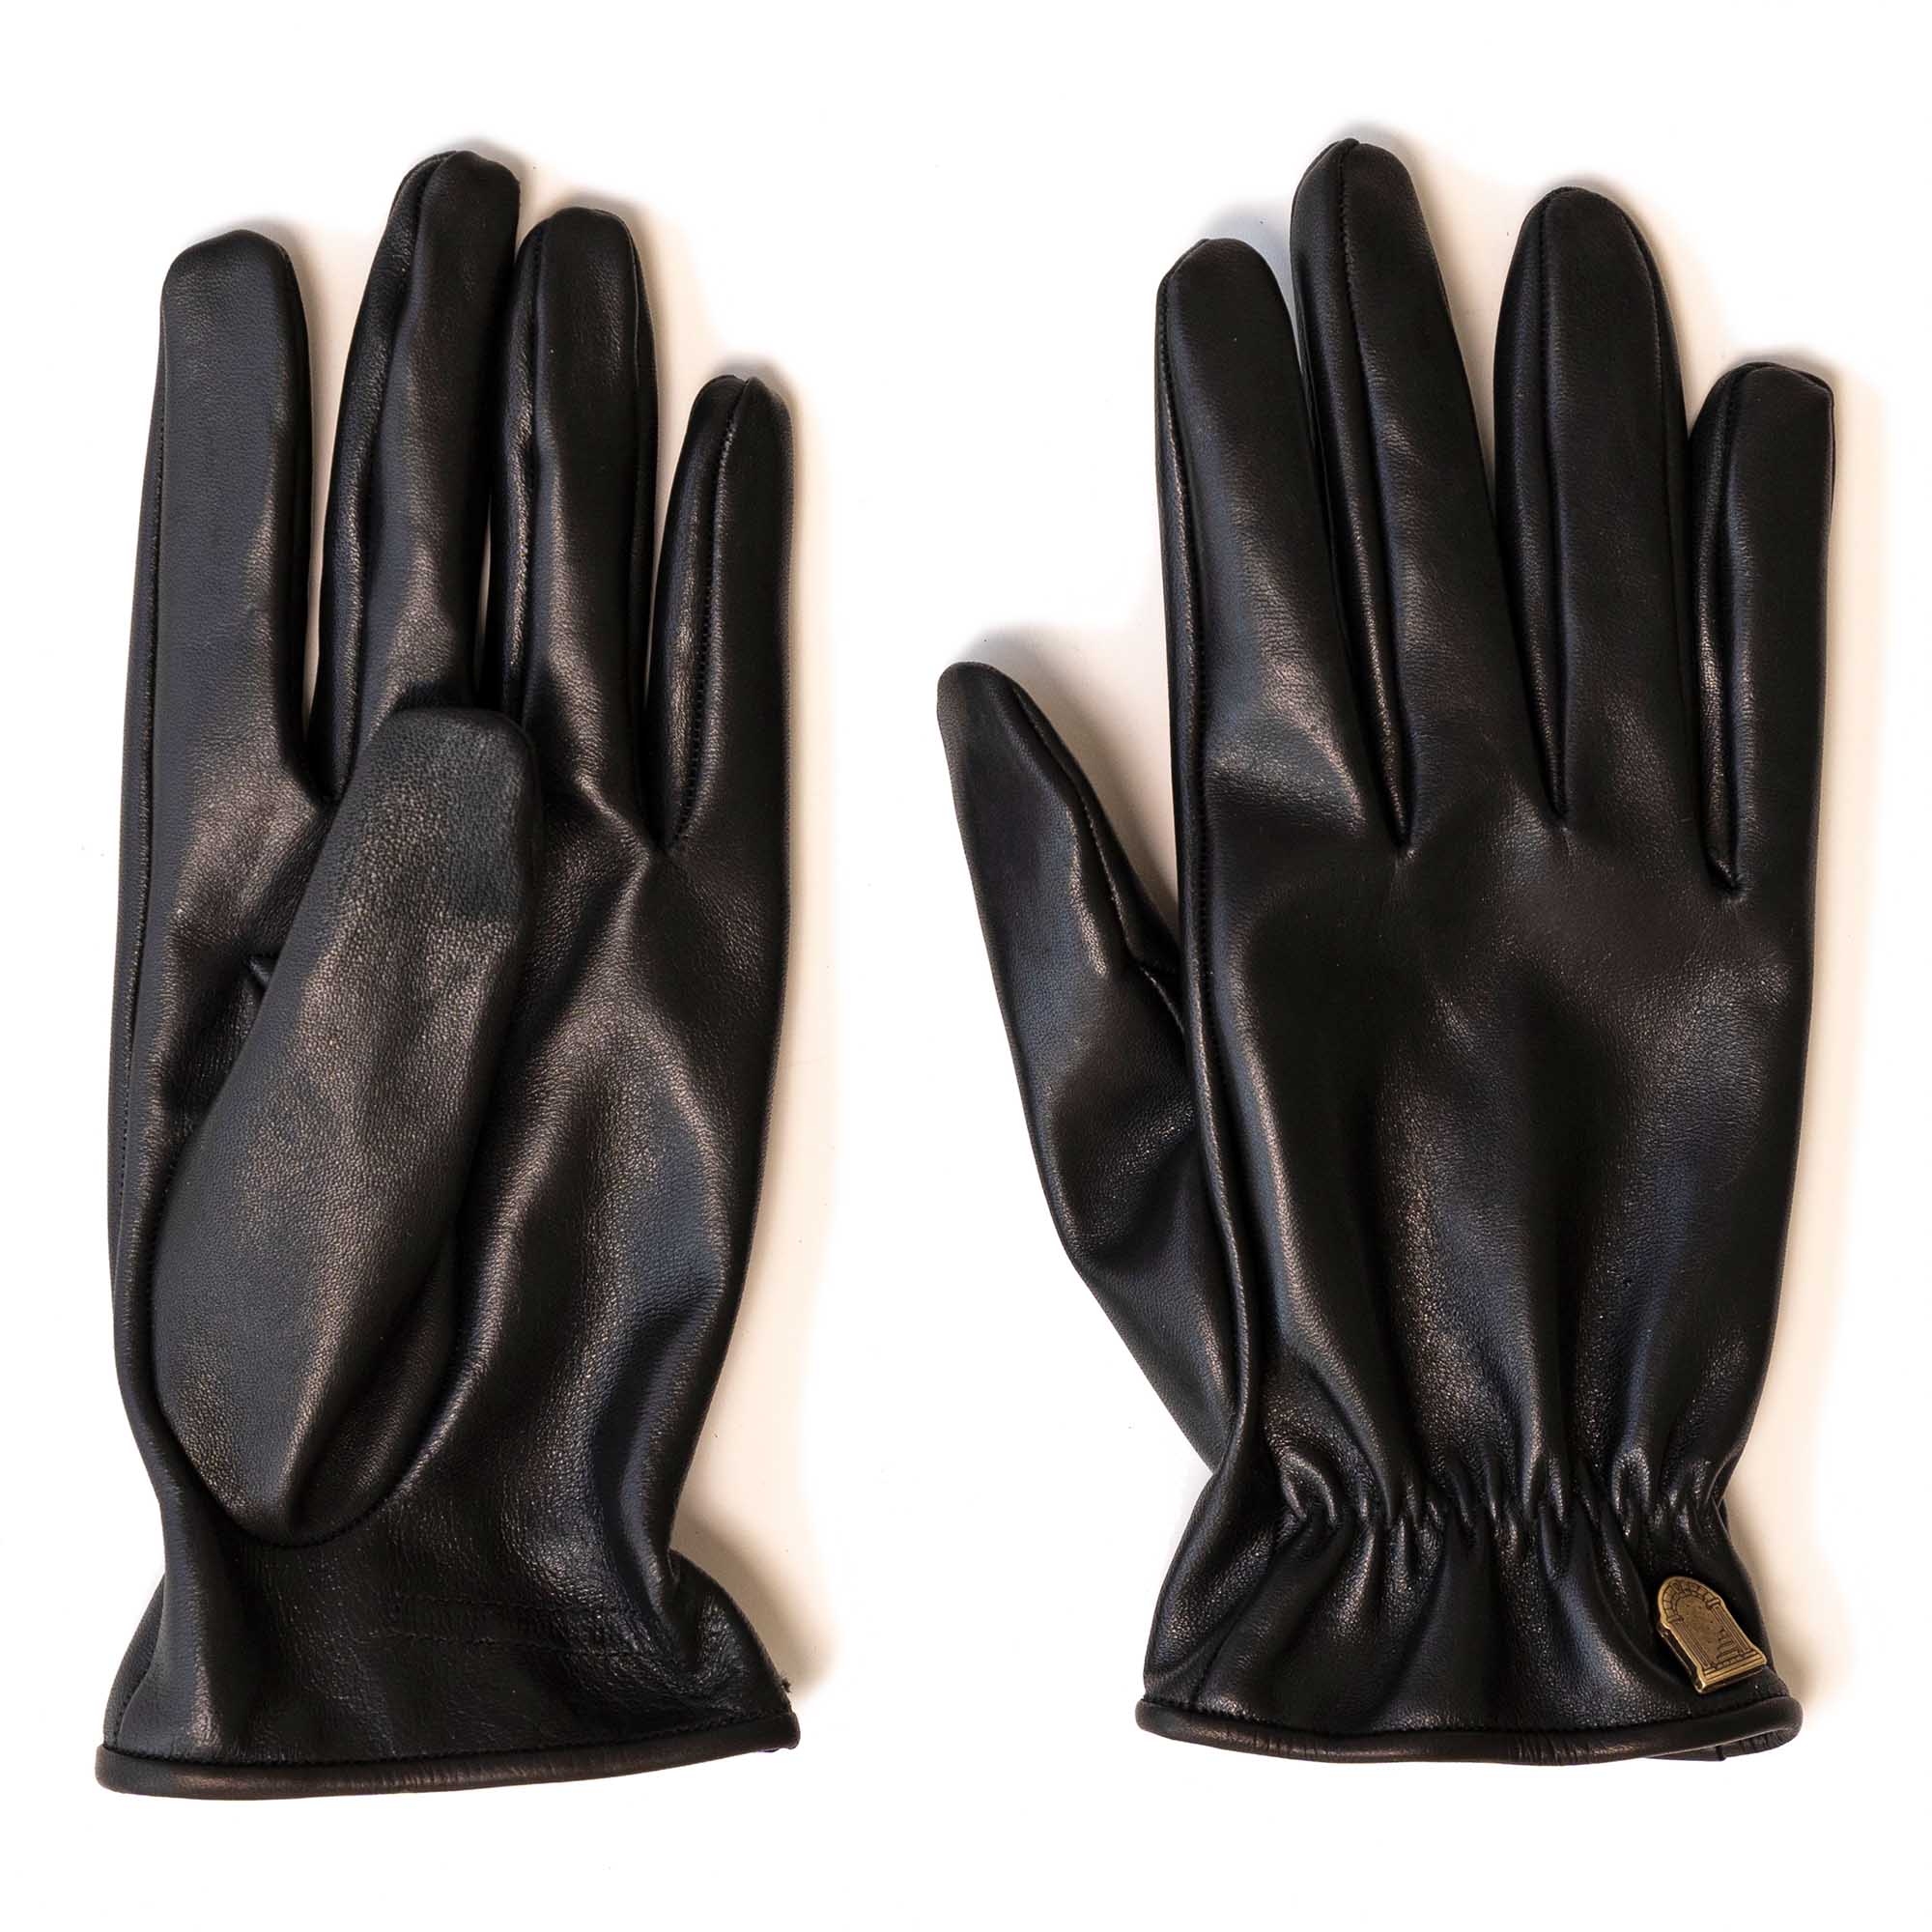 "Bandit" Black Horsehide Gloves